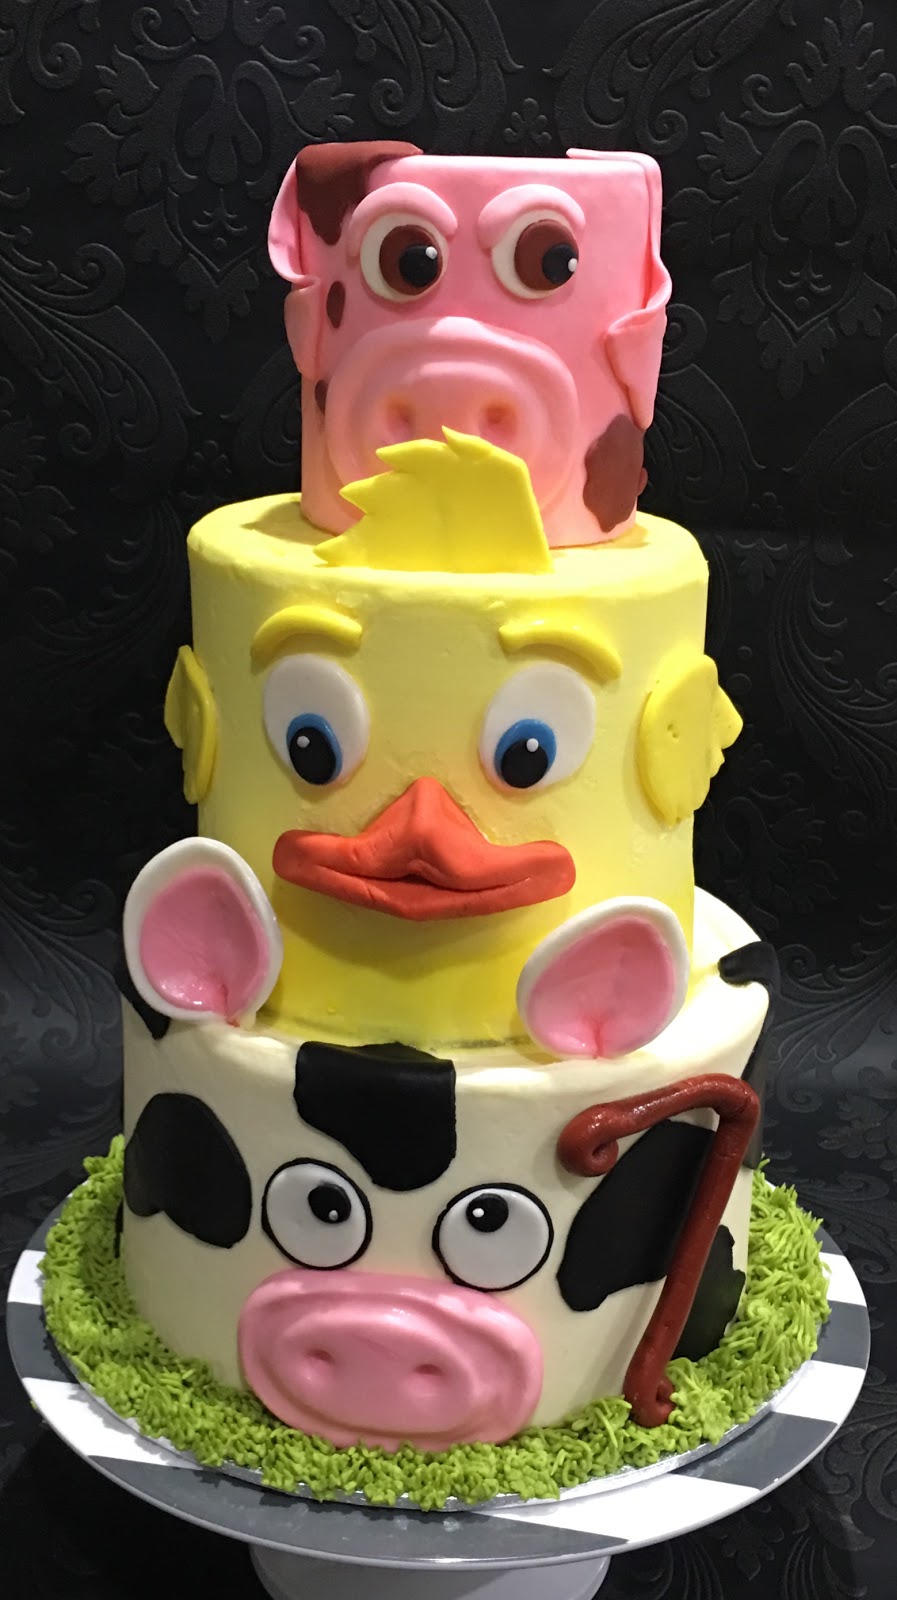 Spot on Cakes - Home Bakery ( egg & eggless cakes) | Portsmouth Circuit, Jordan Springs NSW 2747, Australia | Phone: 0470 498 428